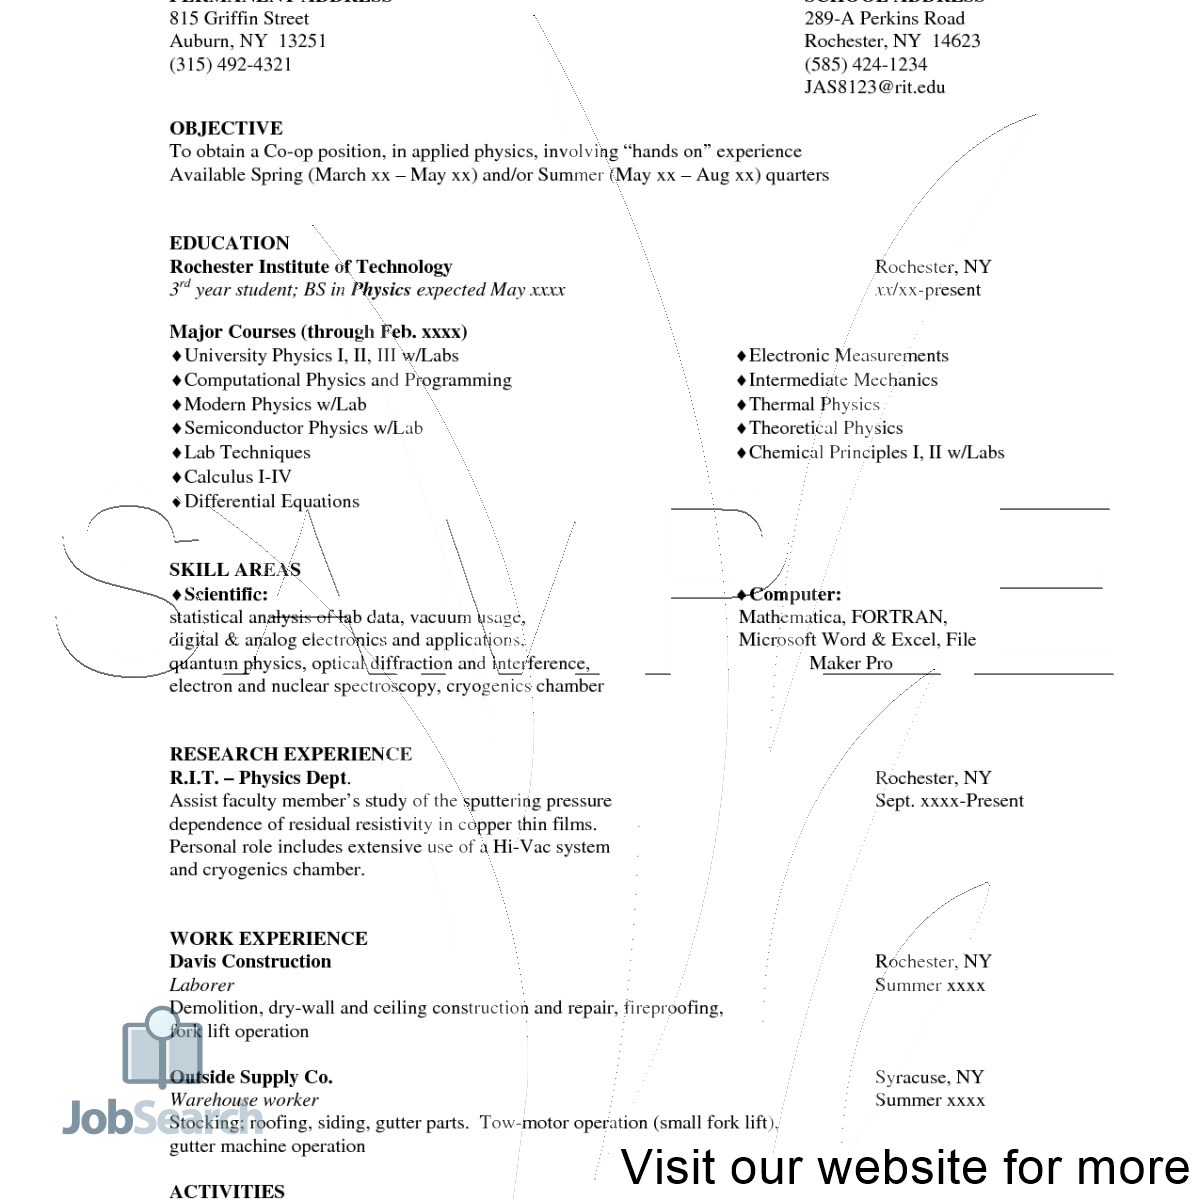 resume for medical coder resume for medical coder fresher resume for medical coder with no experience resume for medical coder with experience